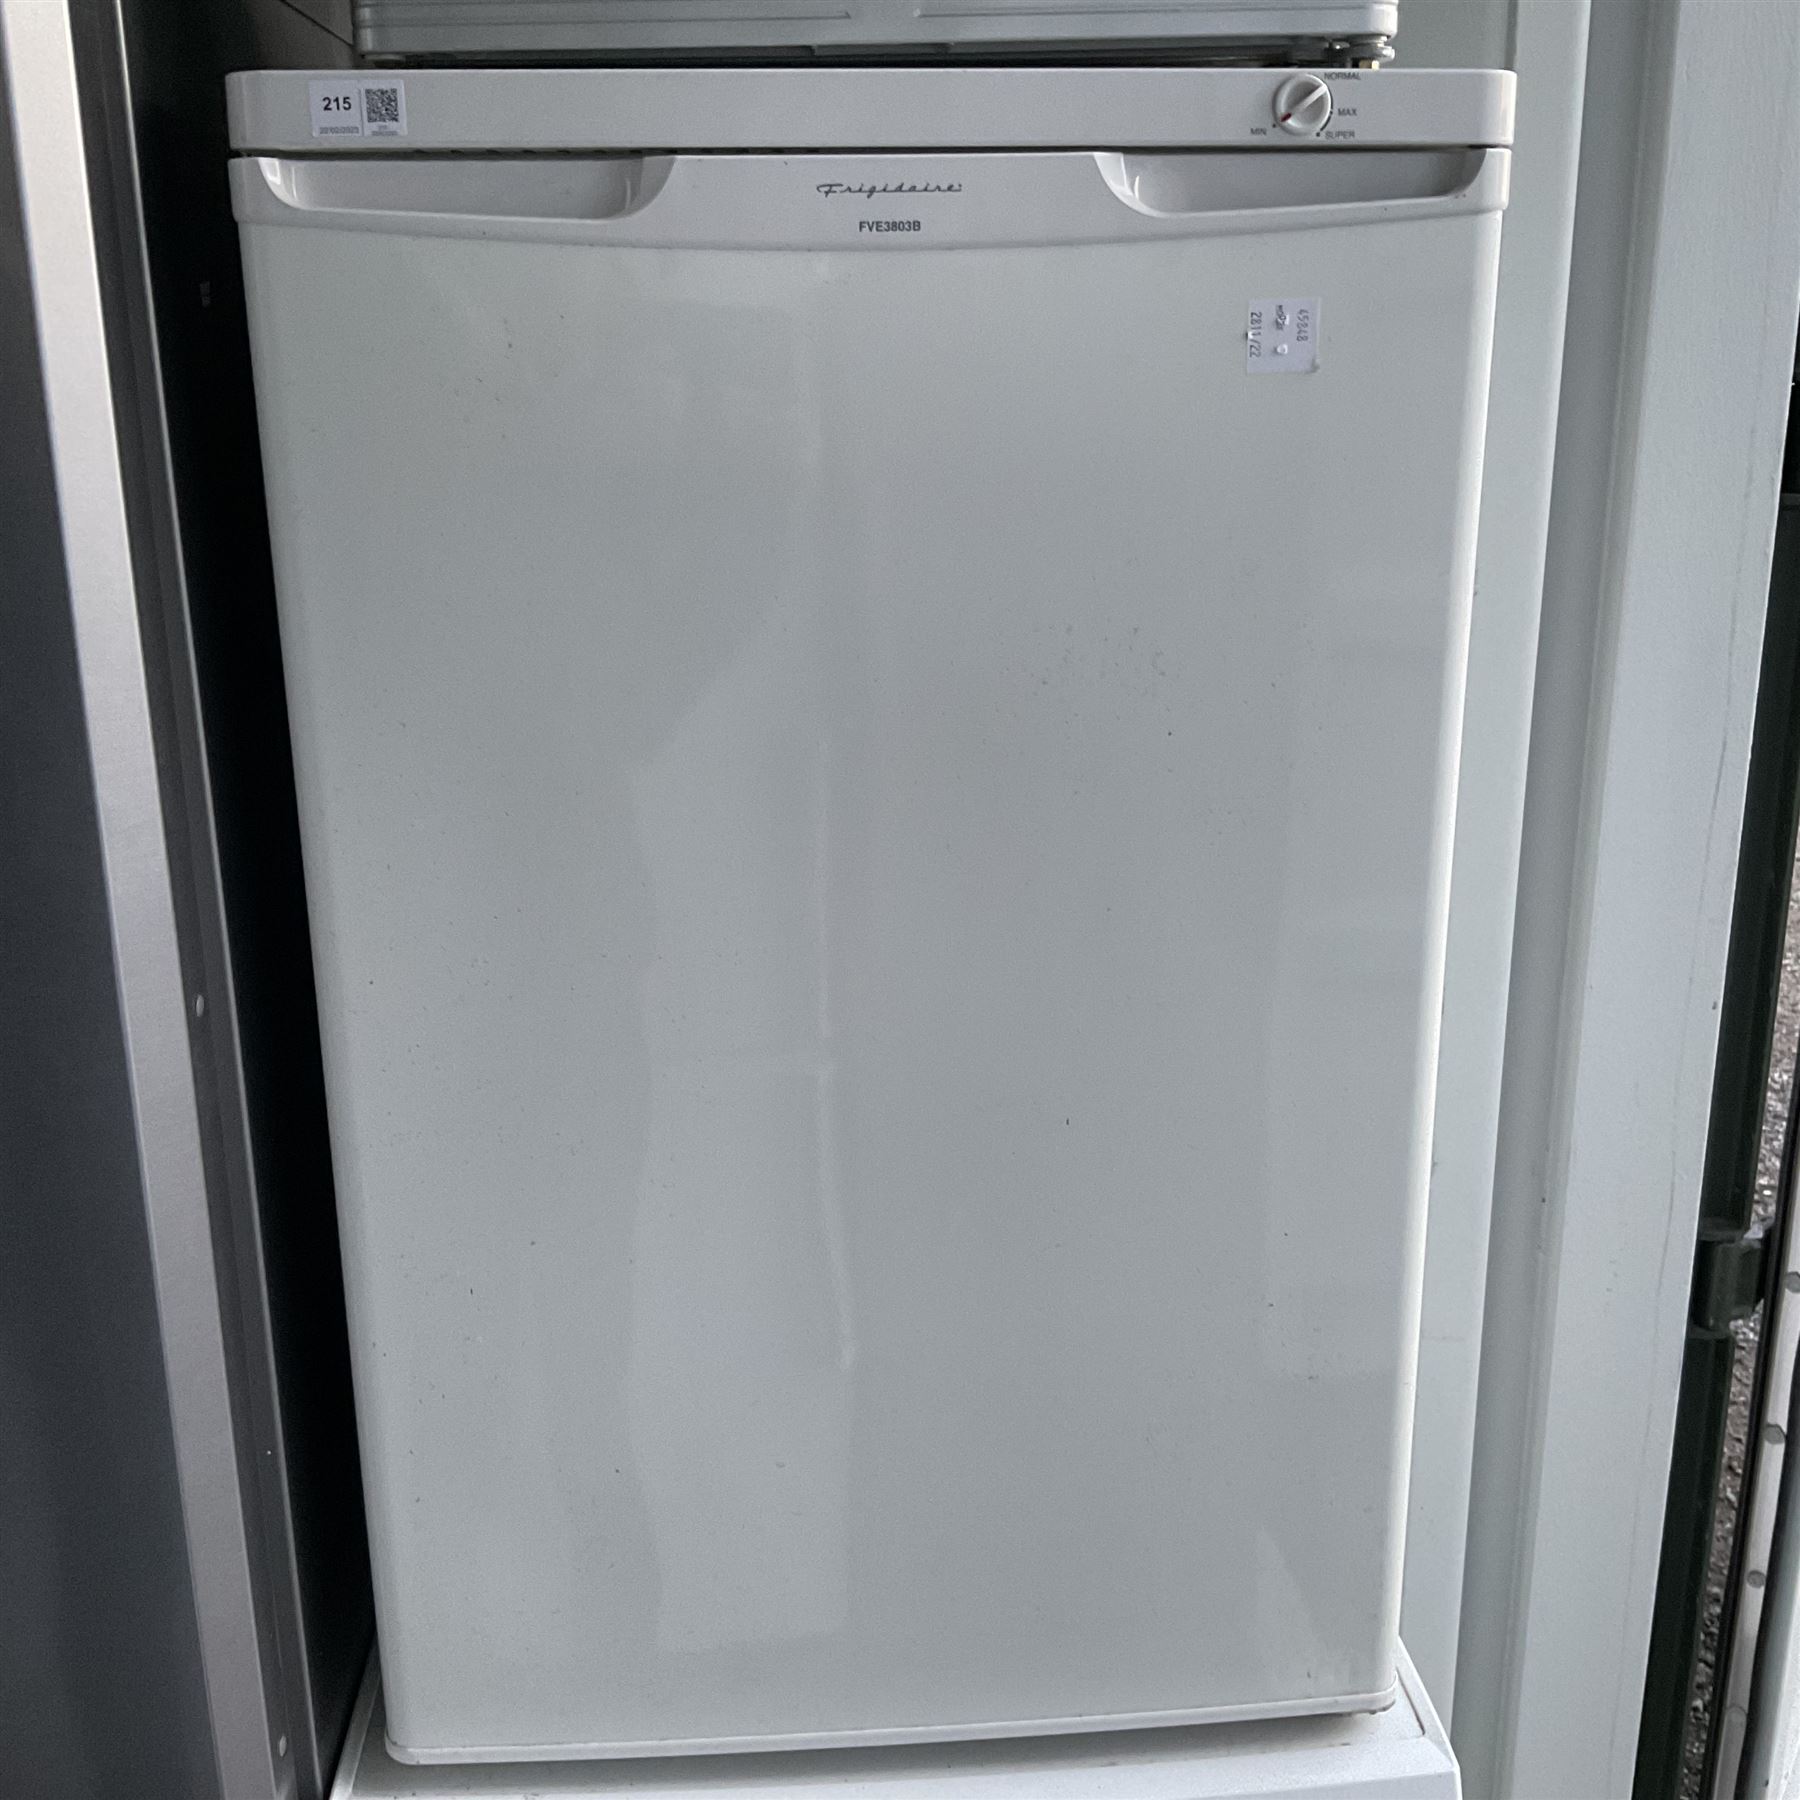 Frigidaire FVE3803B four drawer freezer